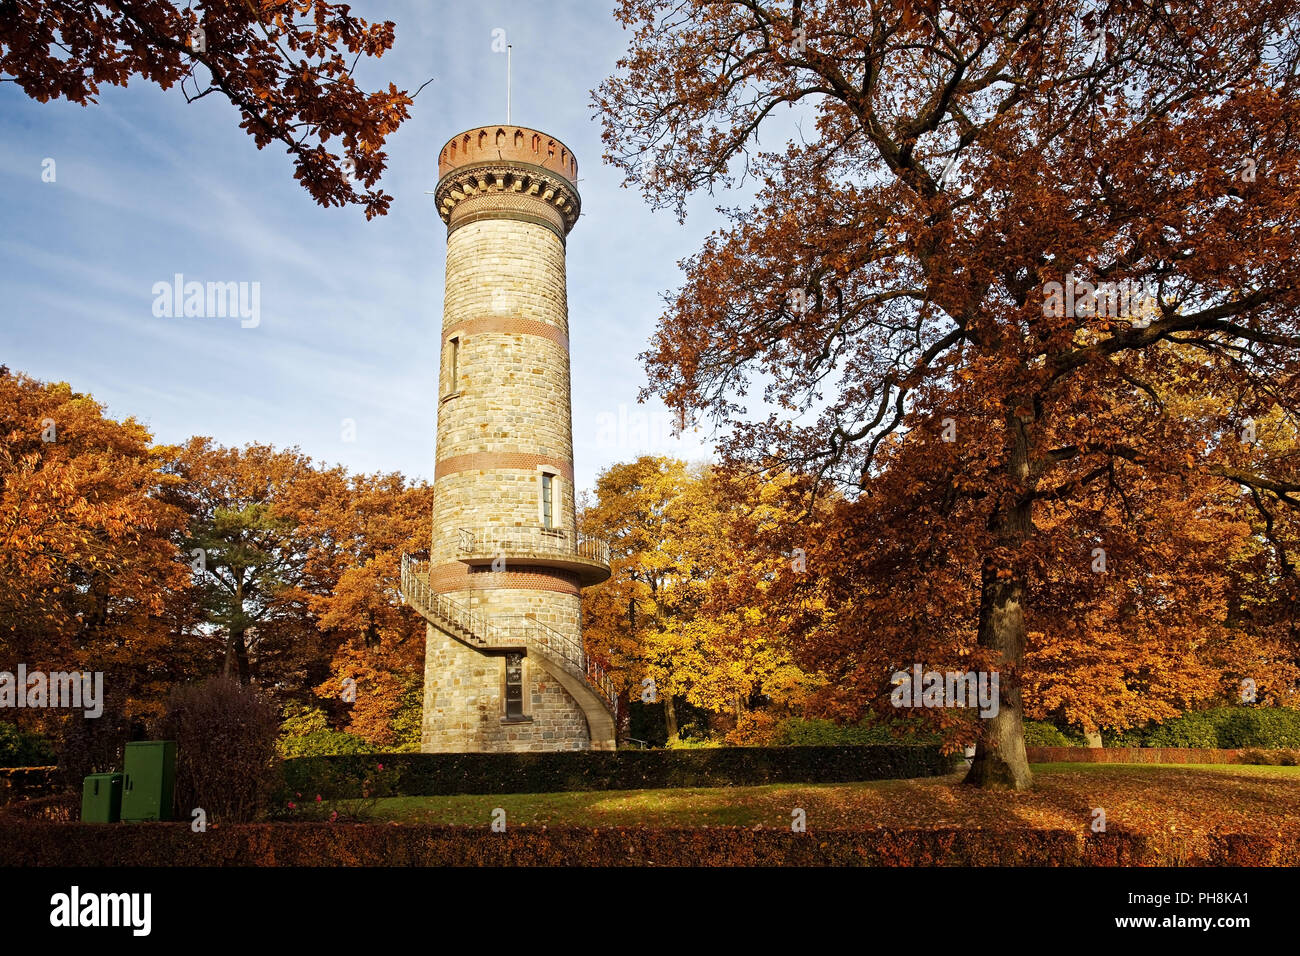 Toelleturm, autumn, Wuppertal Stock Photo